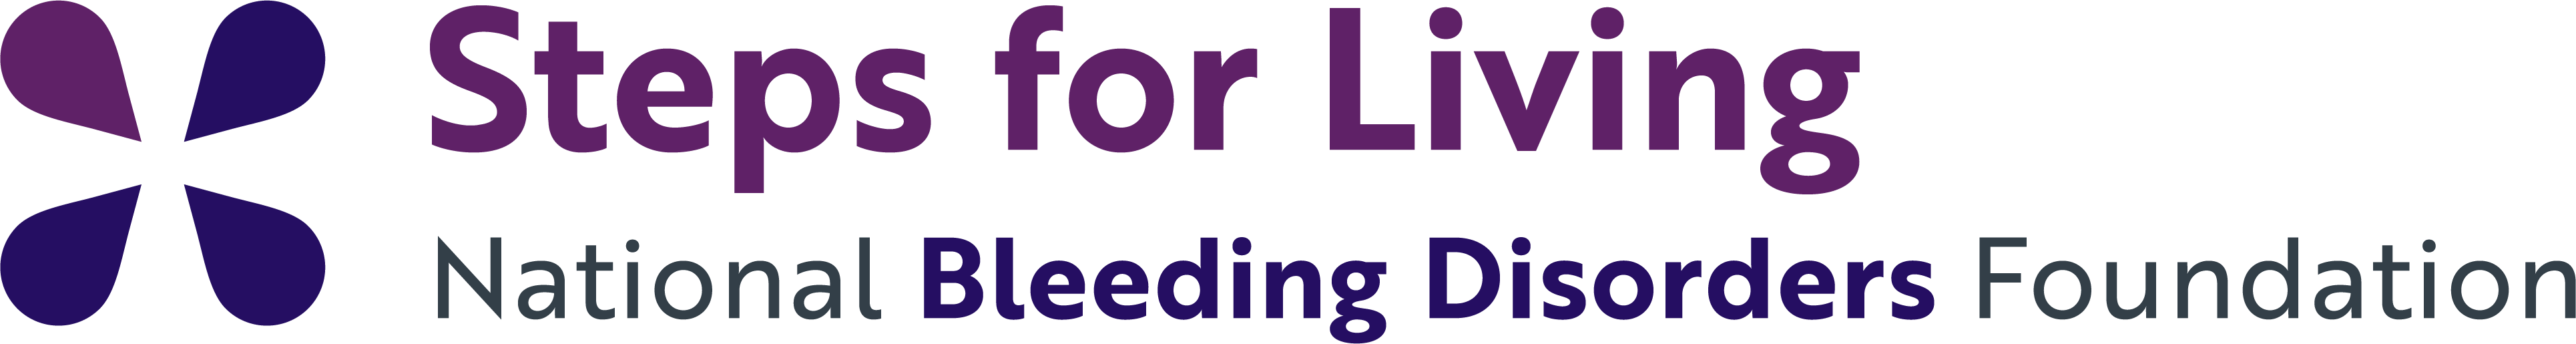 Steps for Living | National Bleeding Disorders Foundation Logo